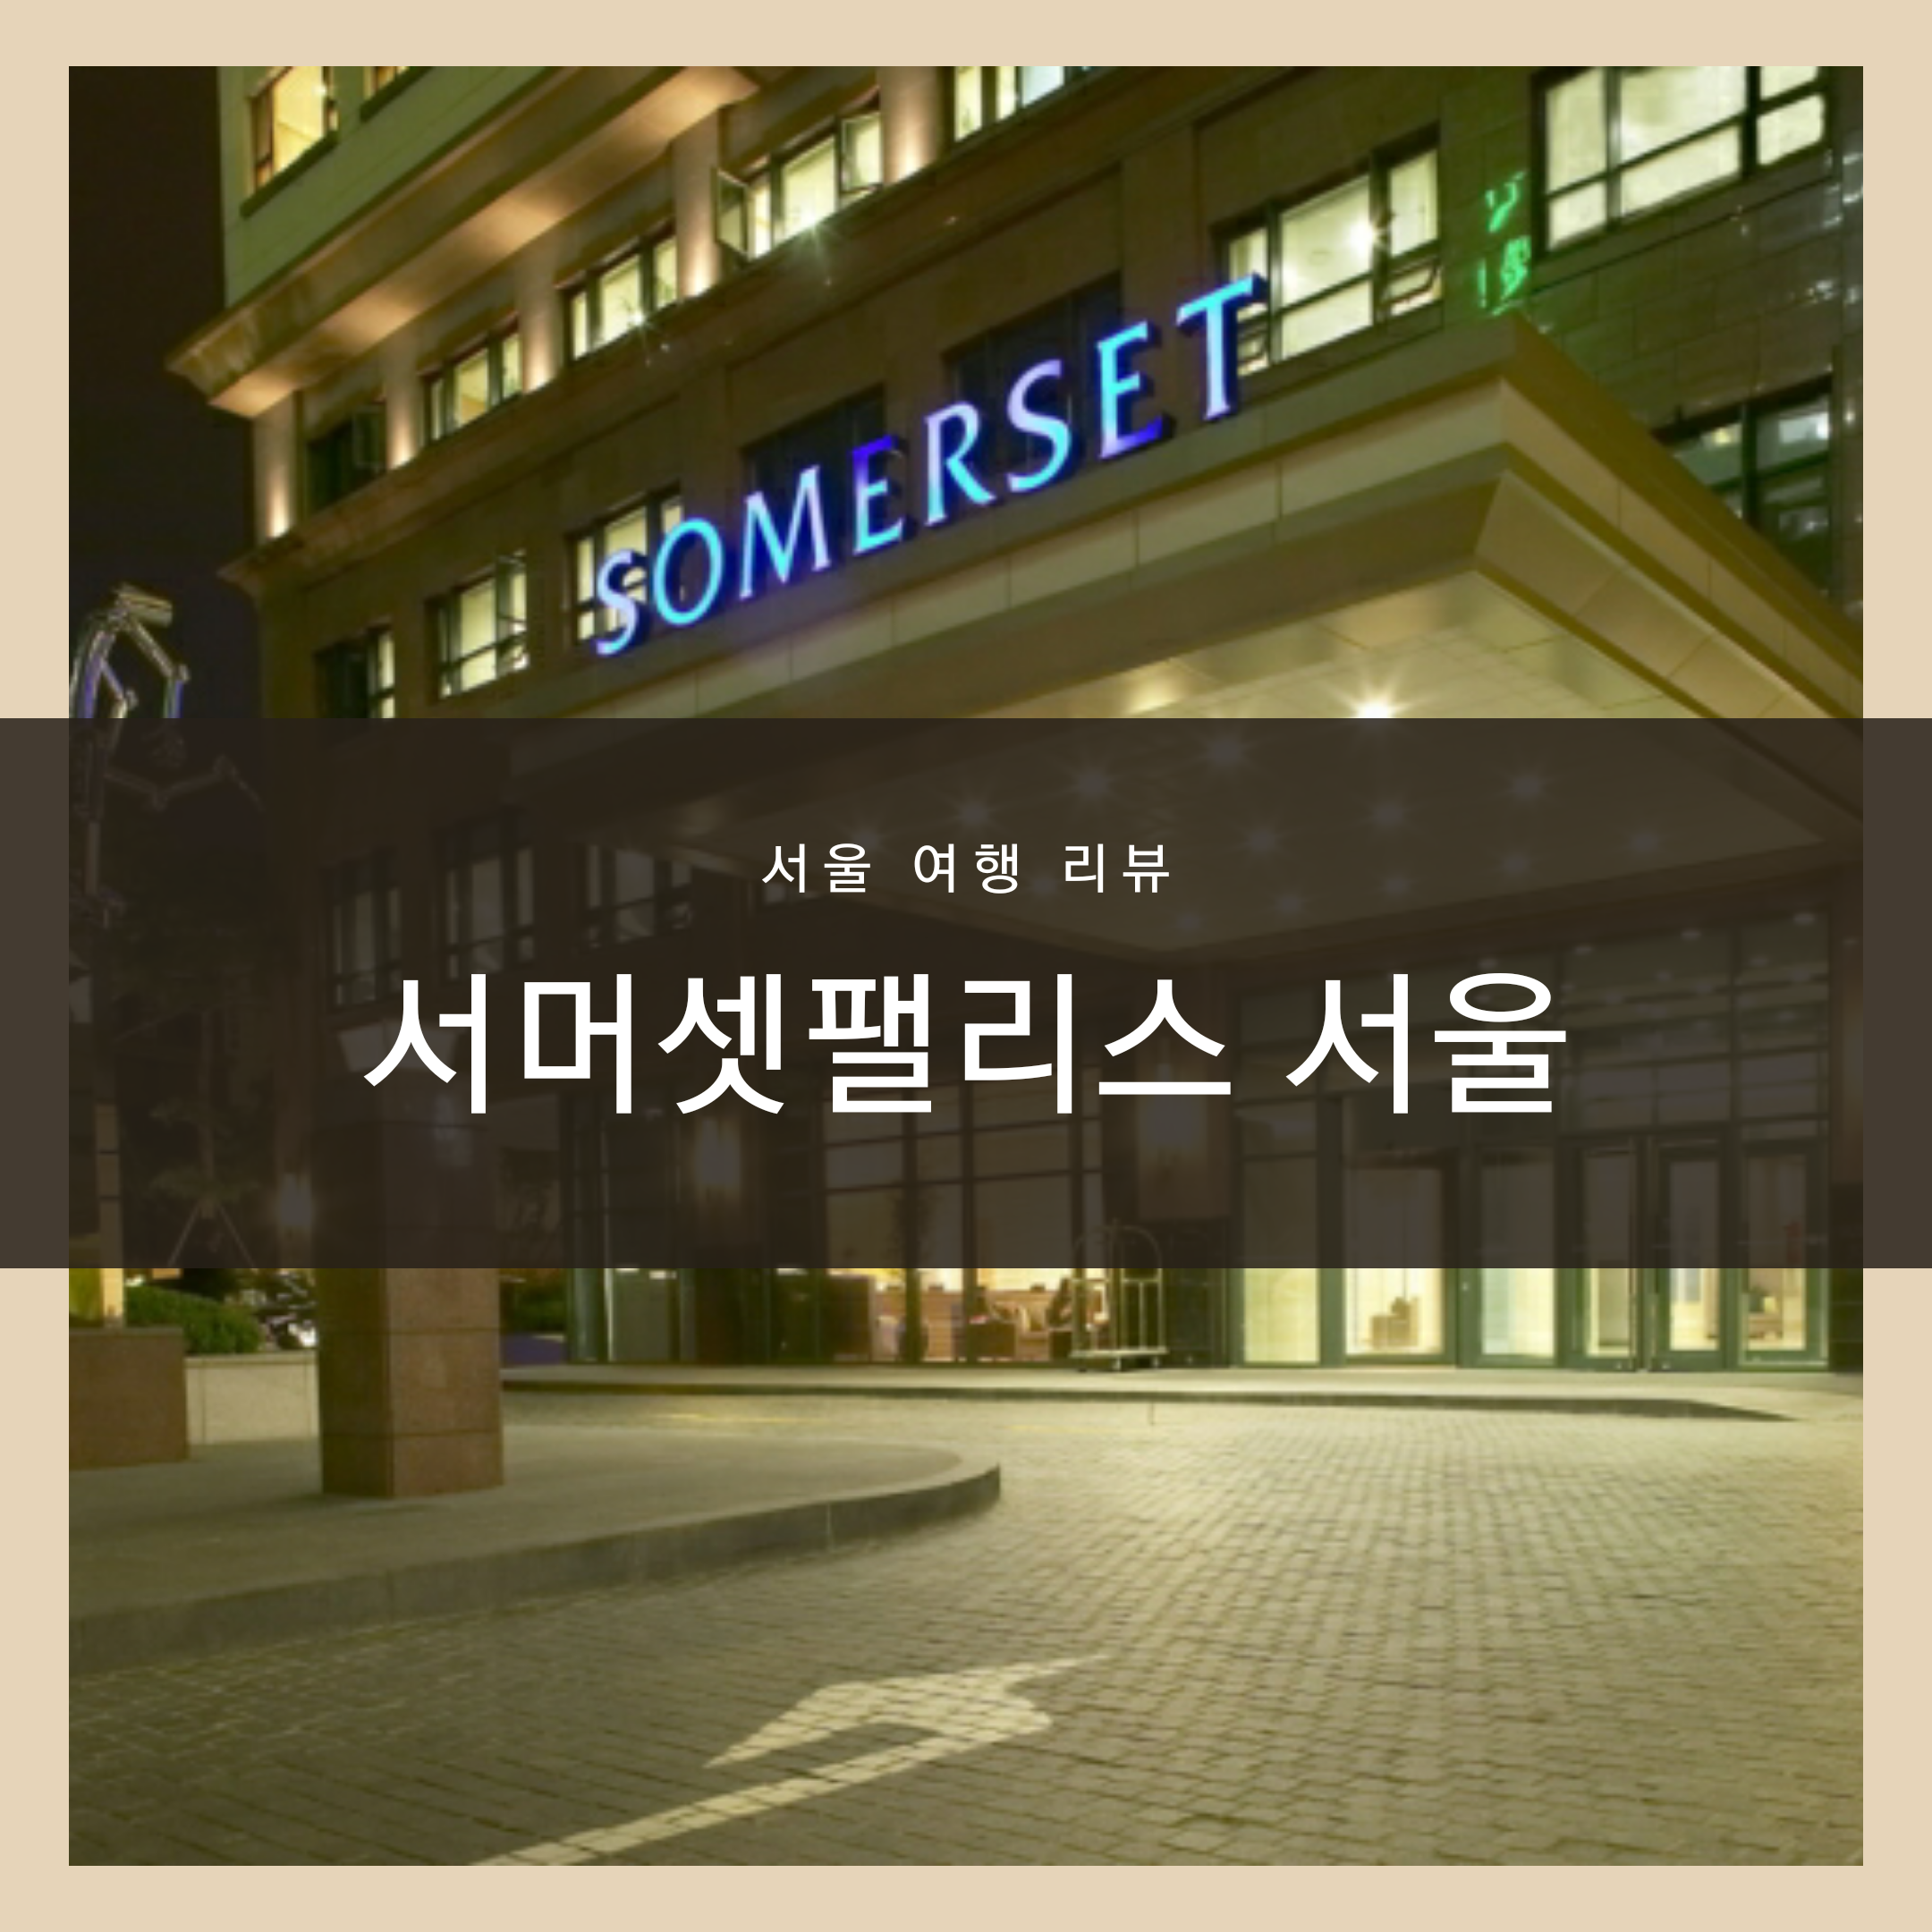 서머셋팰리스 서울 호텔, 서머셋팰리스 수영장, 서머셋팰리스 조식, 서머셋팰리스 스튜디오 더블_1